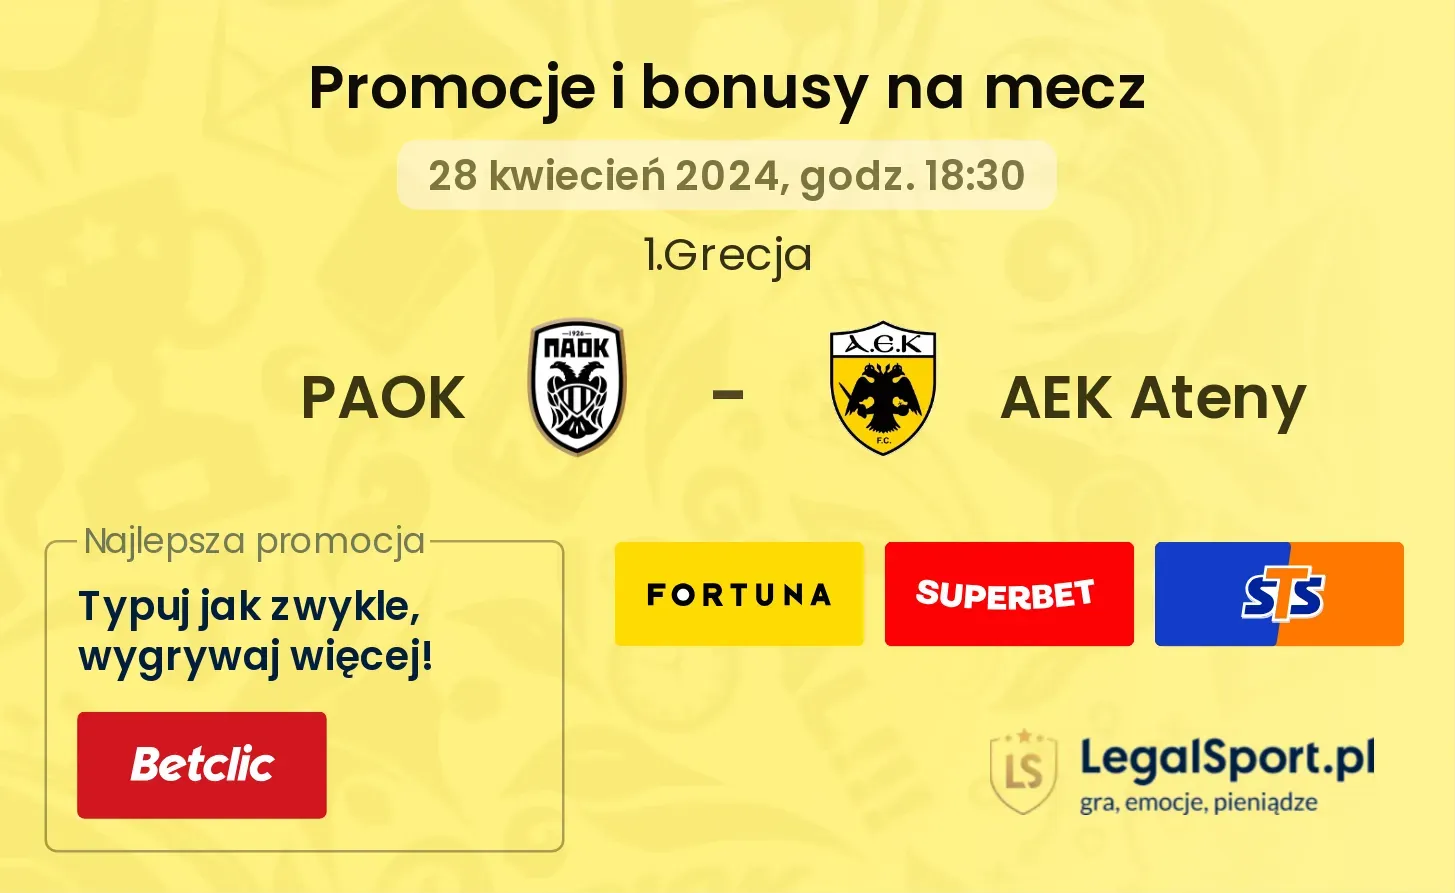 PAOK - AEK Ateny promocje bonusy na mecz